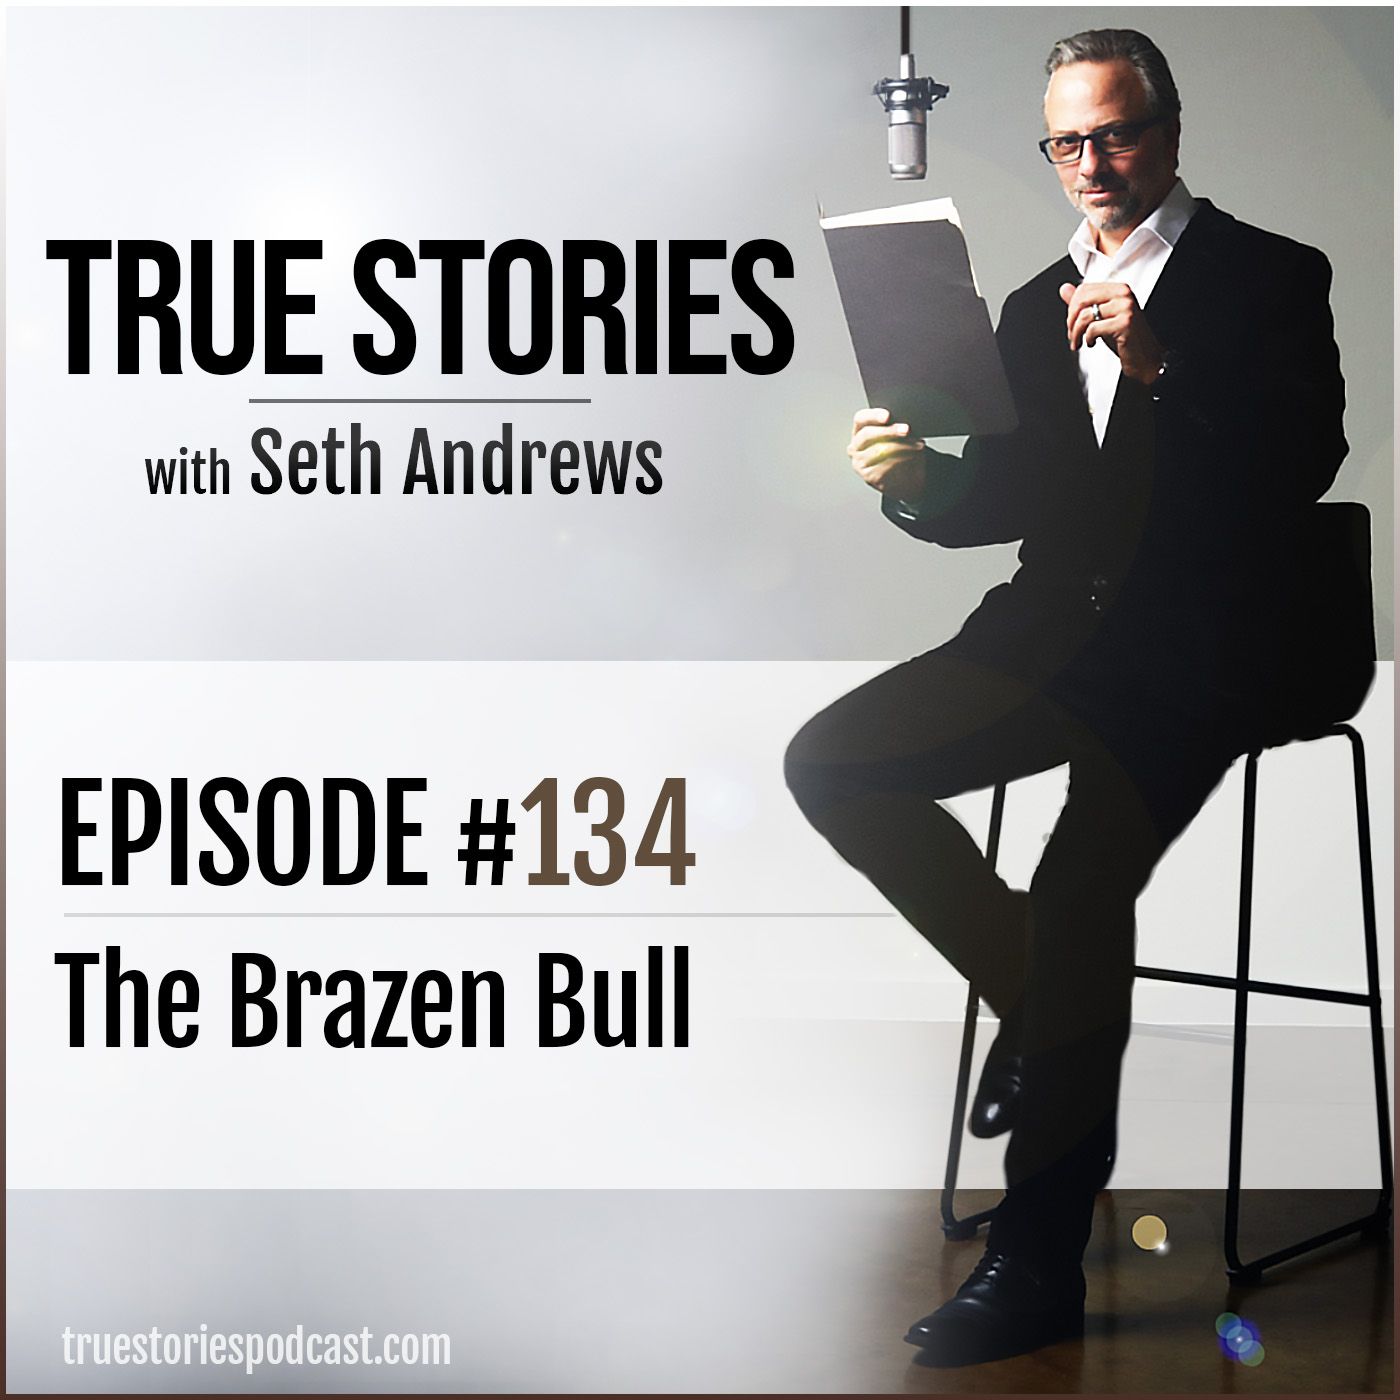 True Stories #134 - The Brazen Bull